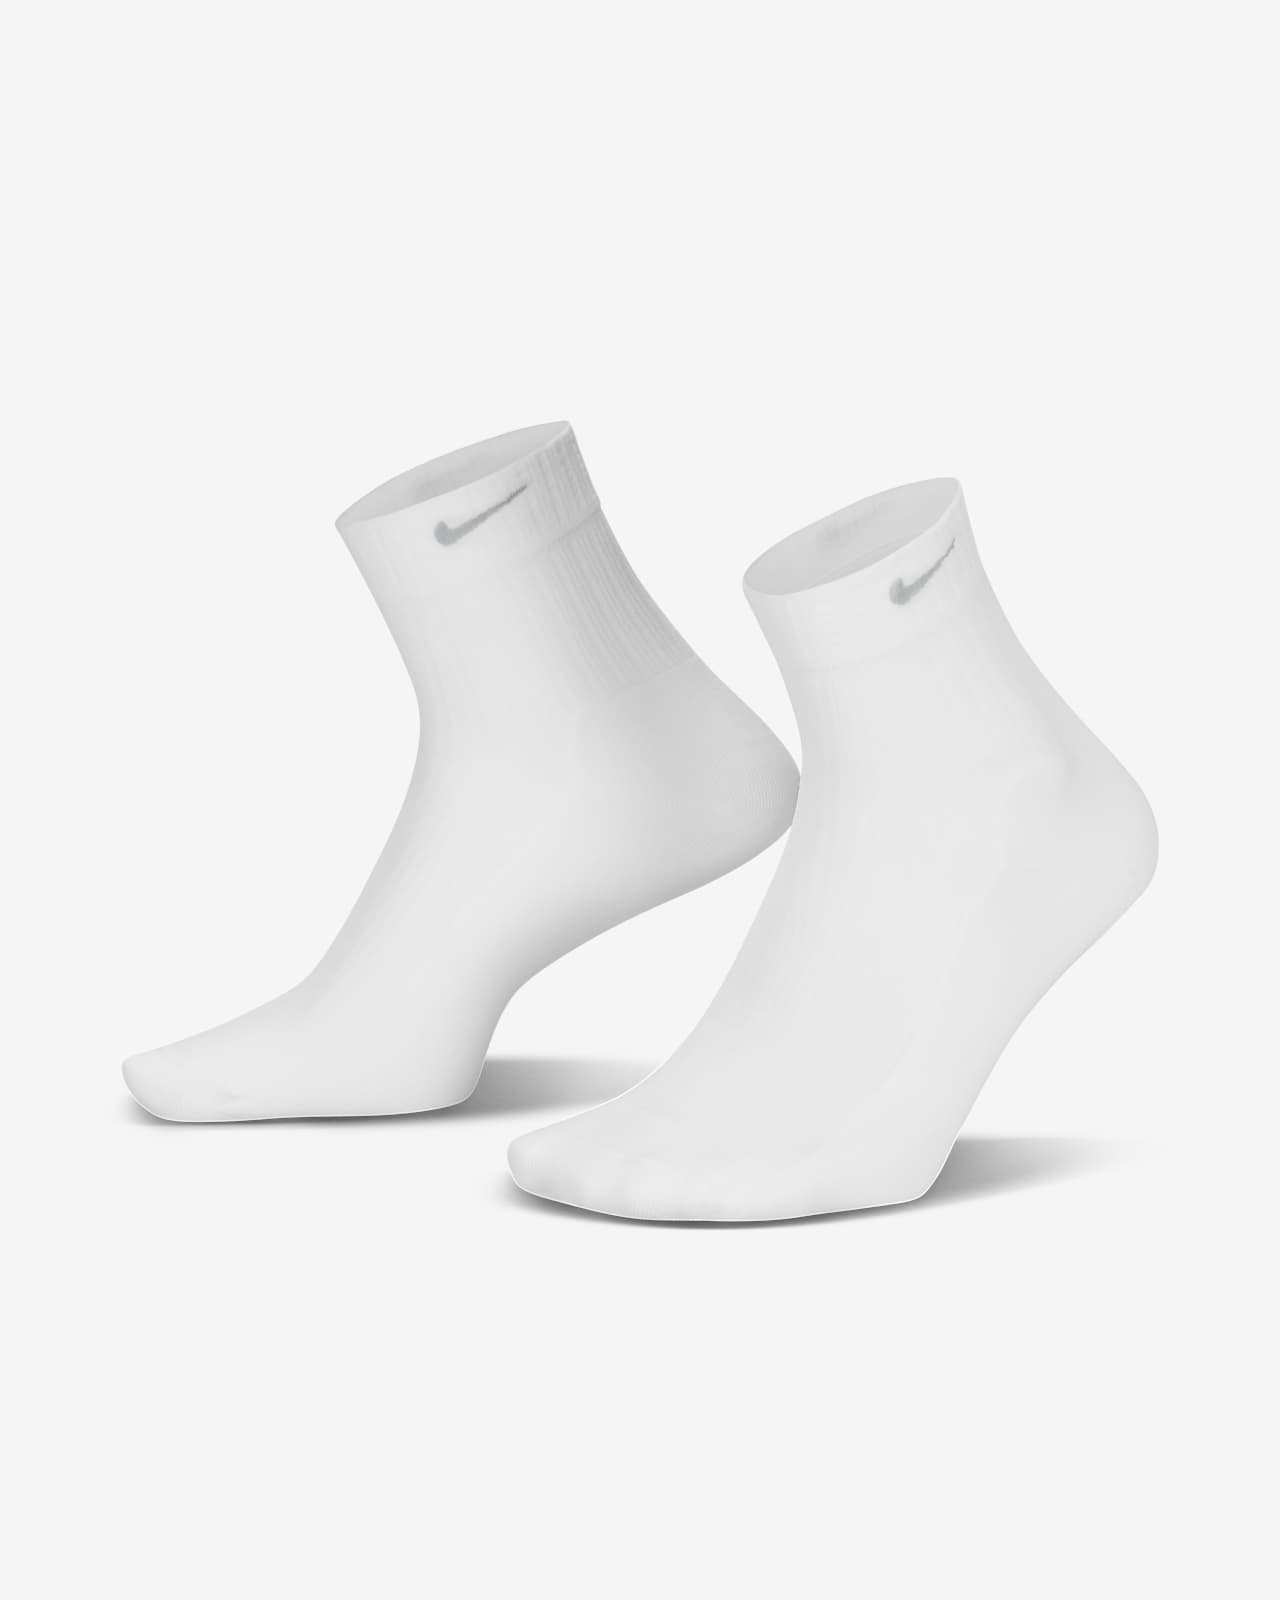 Socquettes transparentes Nike pour femme (1 paire)